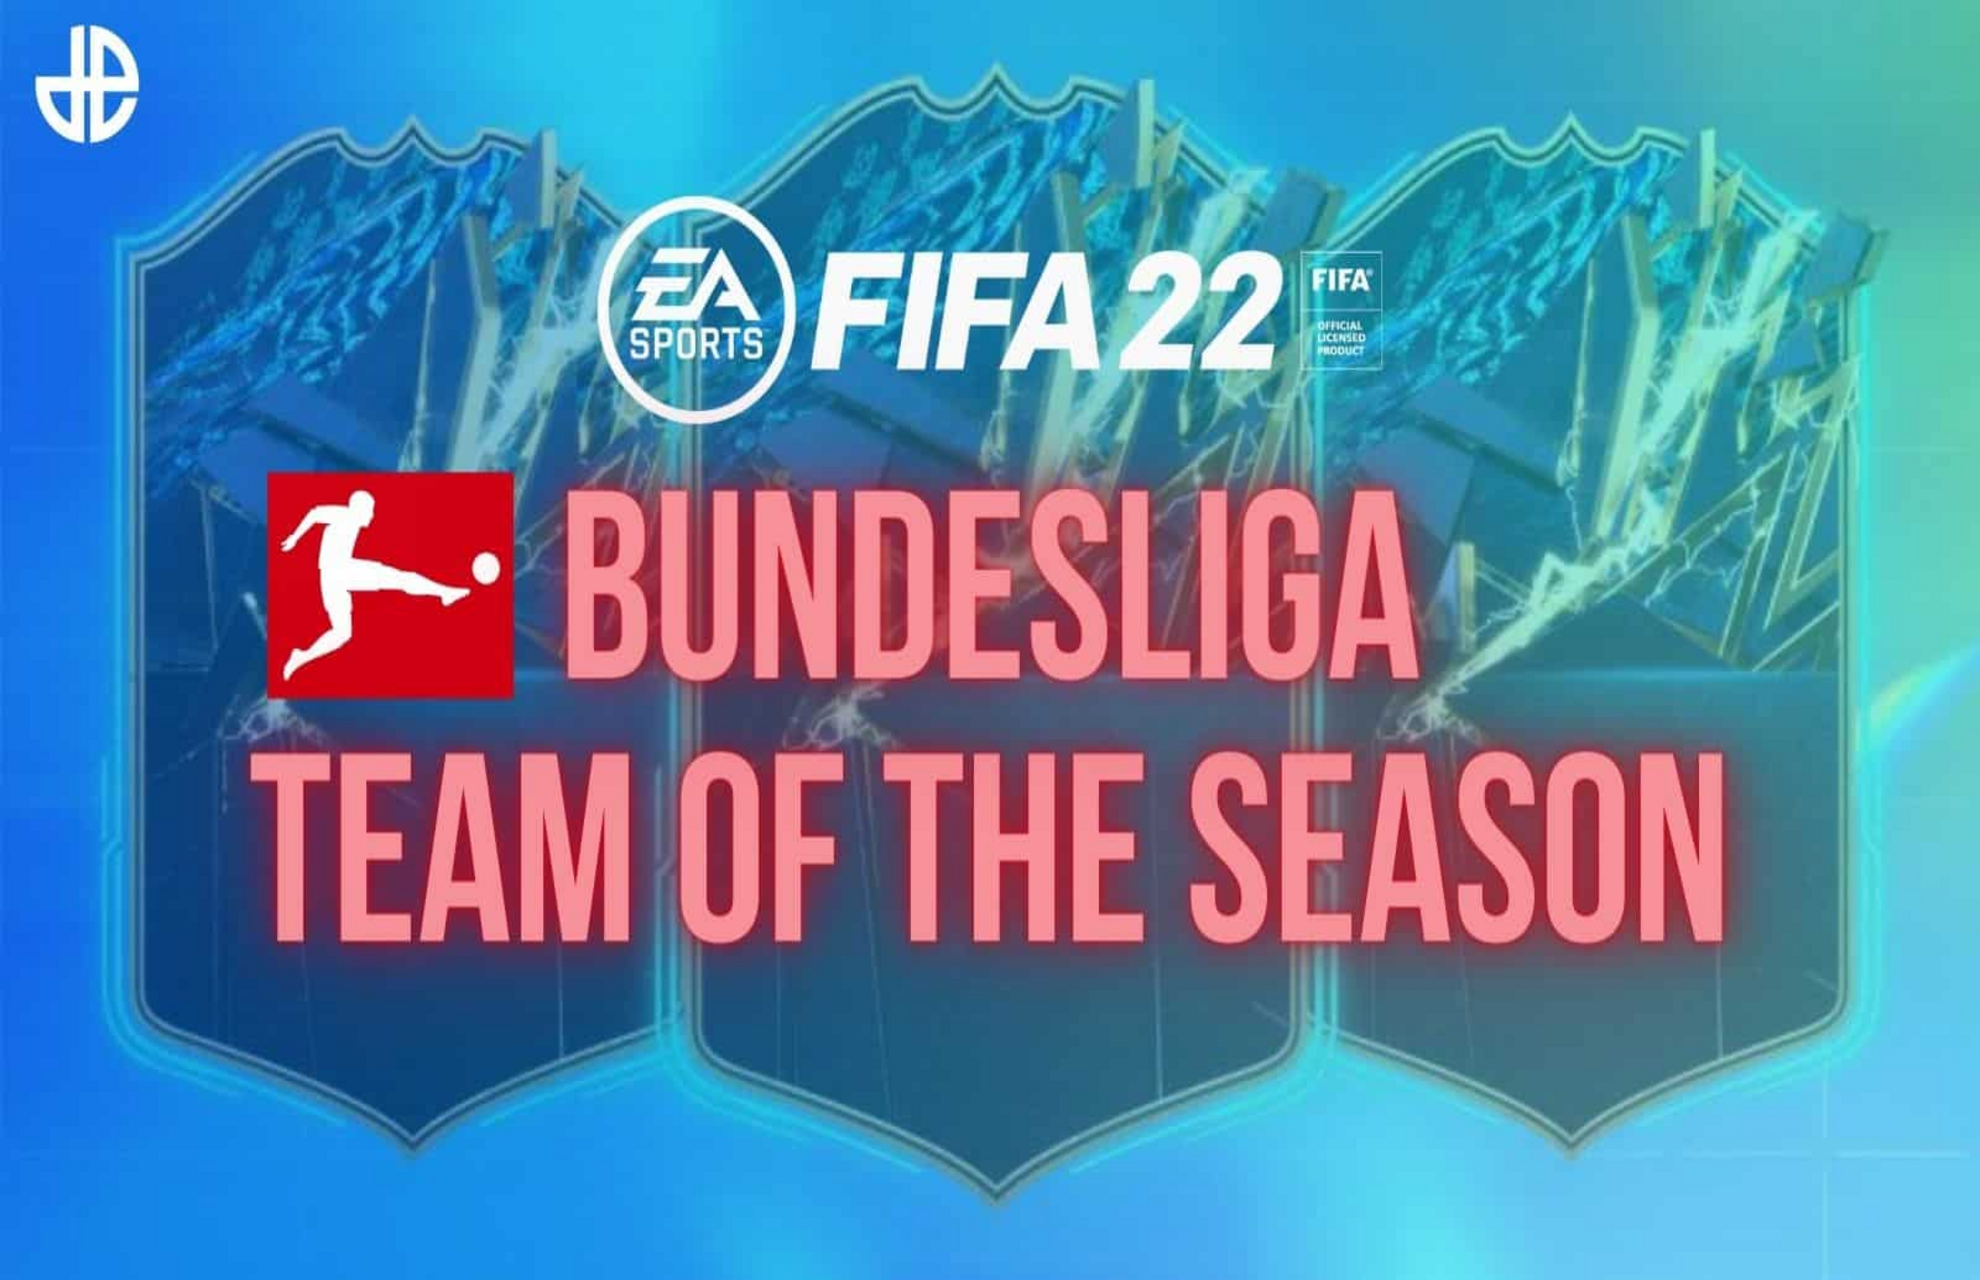 FIFA 22 Bundesliga TOTS is live! With Haaland, Lewandowski & Nkunku